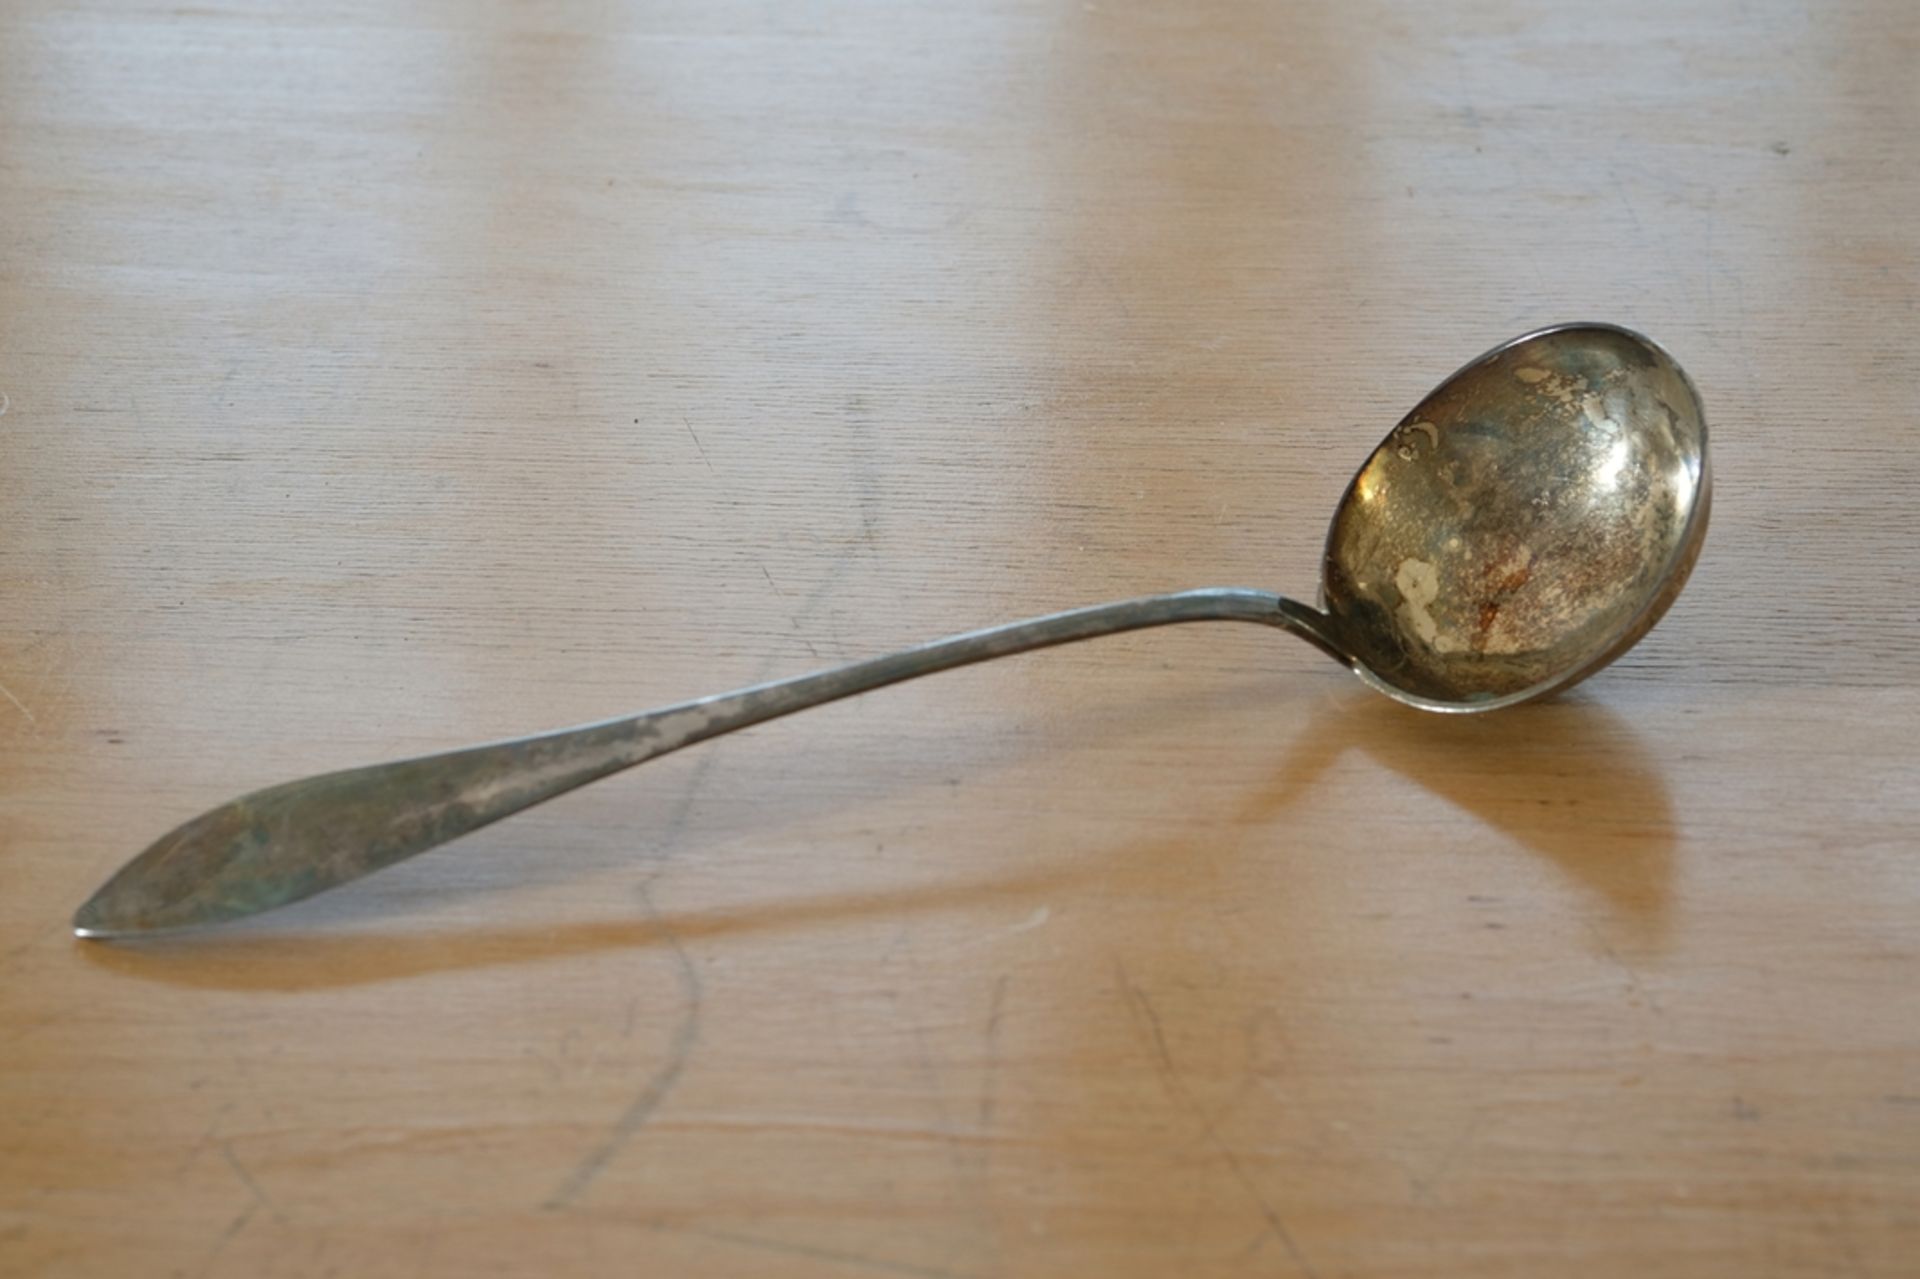 Soup ladle, 13 lot silver, 22g, length 33cm